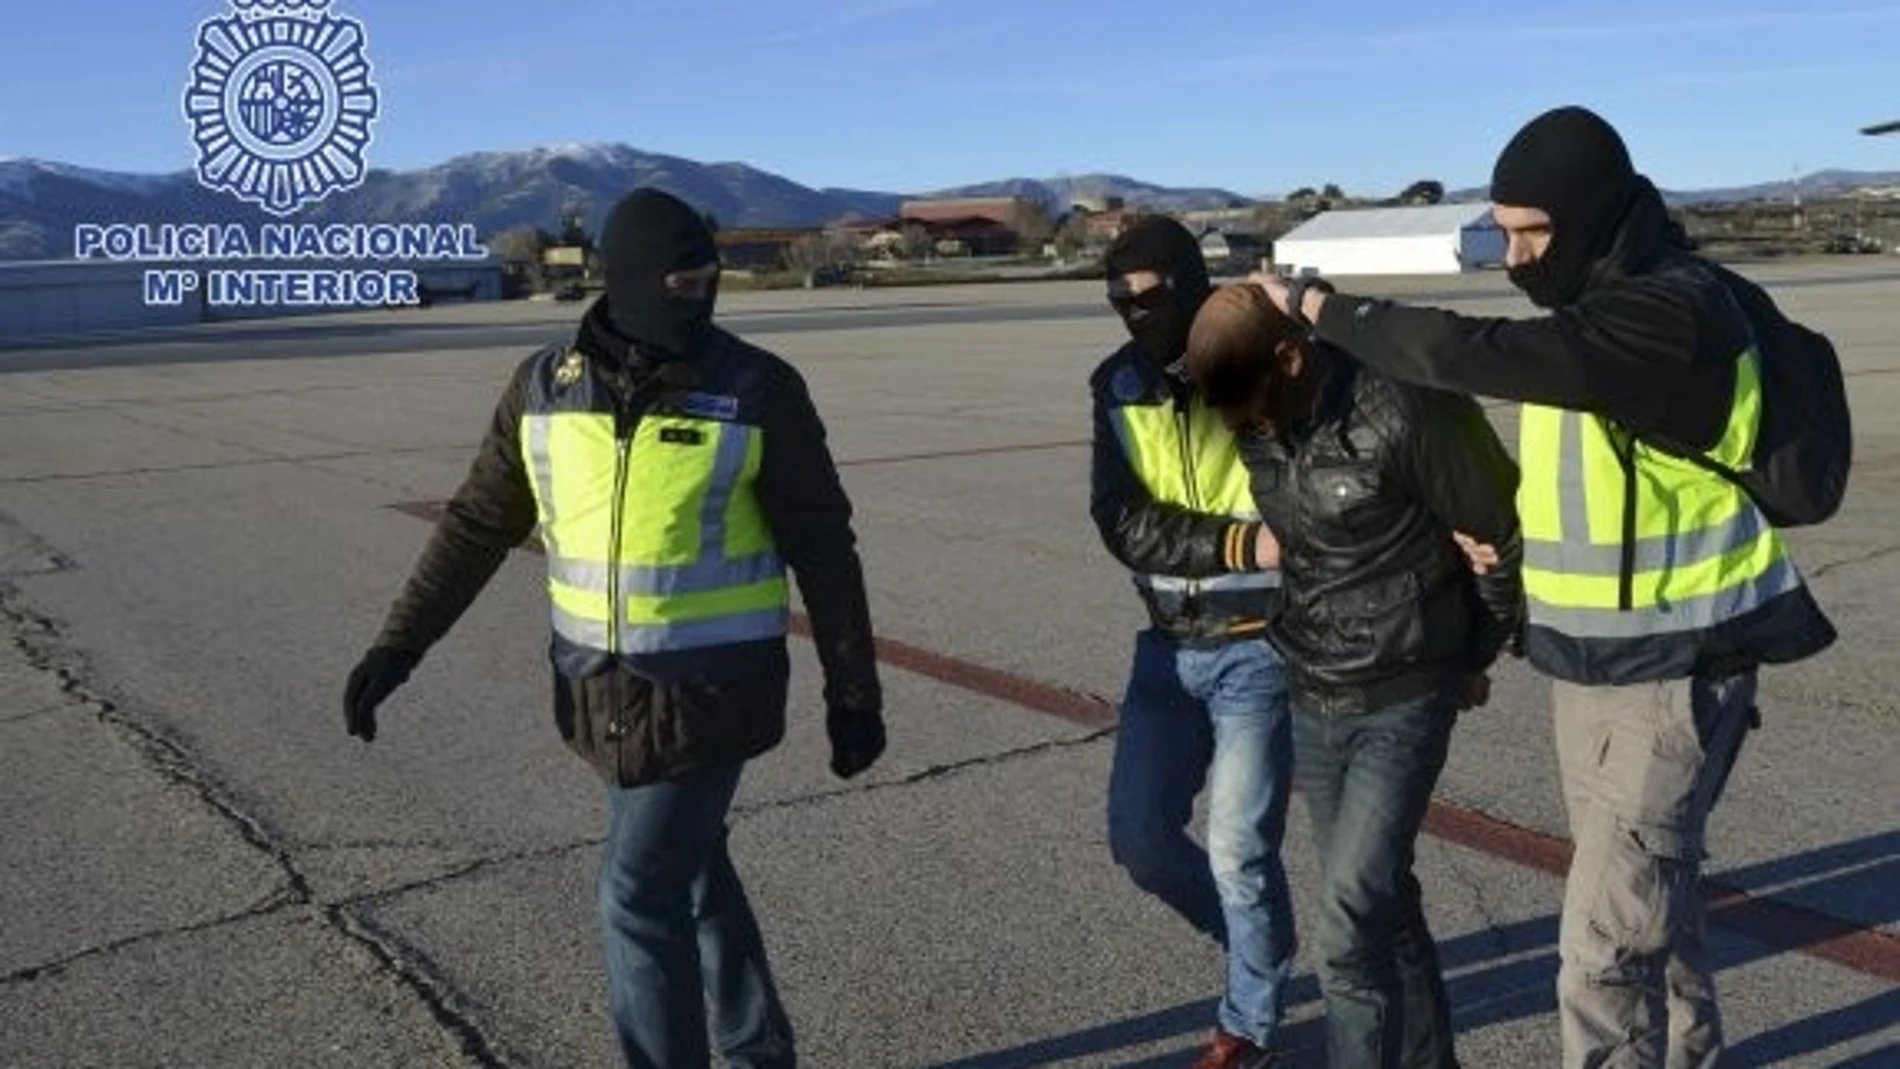 Imagen del arresto en Almería. POLICÍA NACIONAL